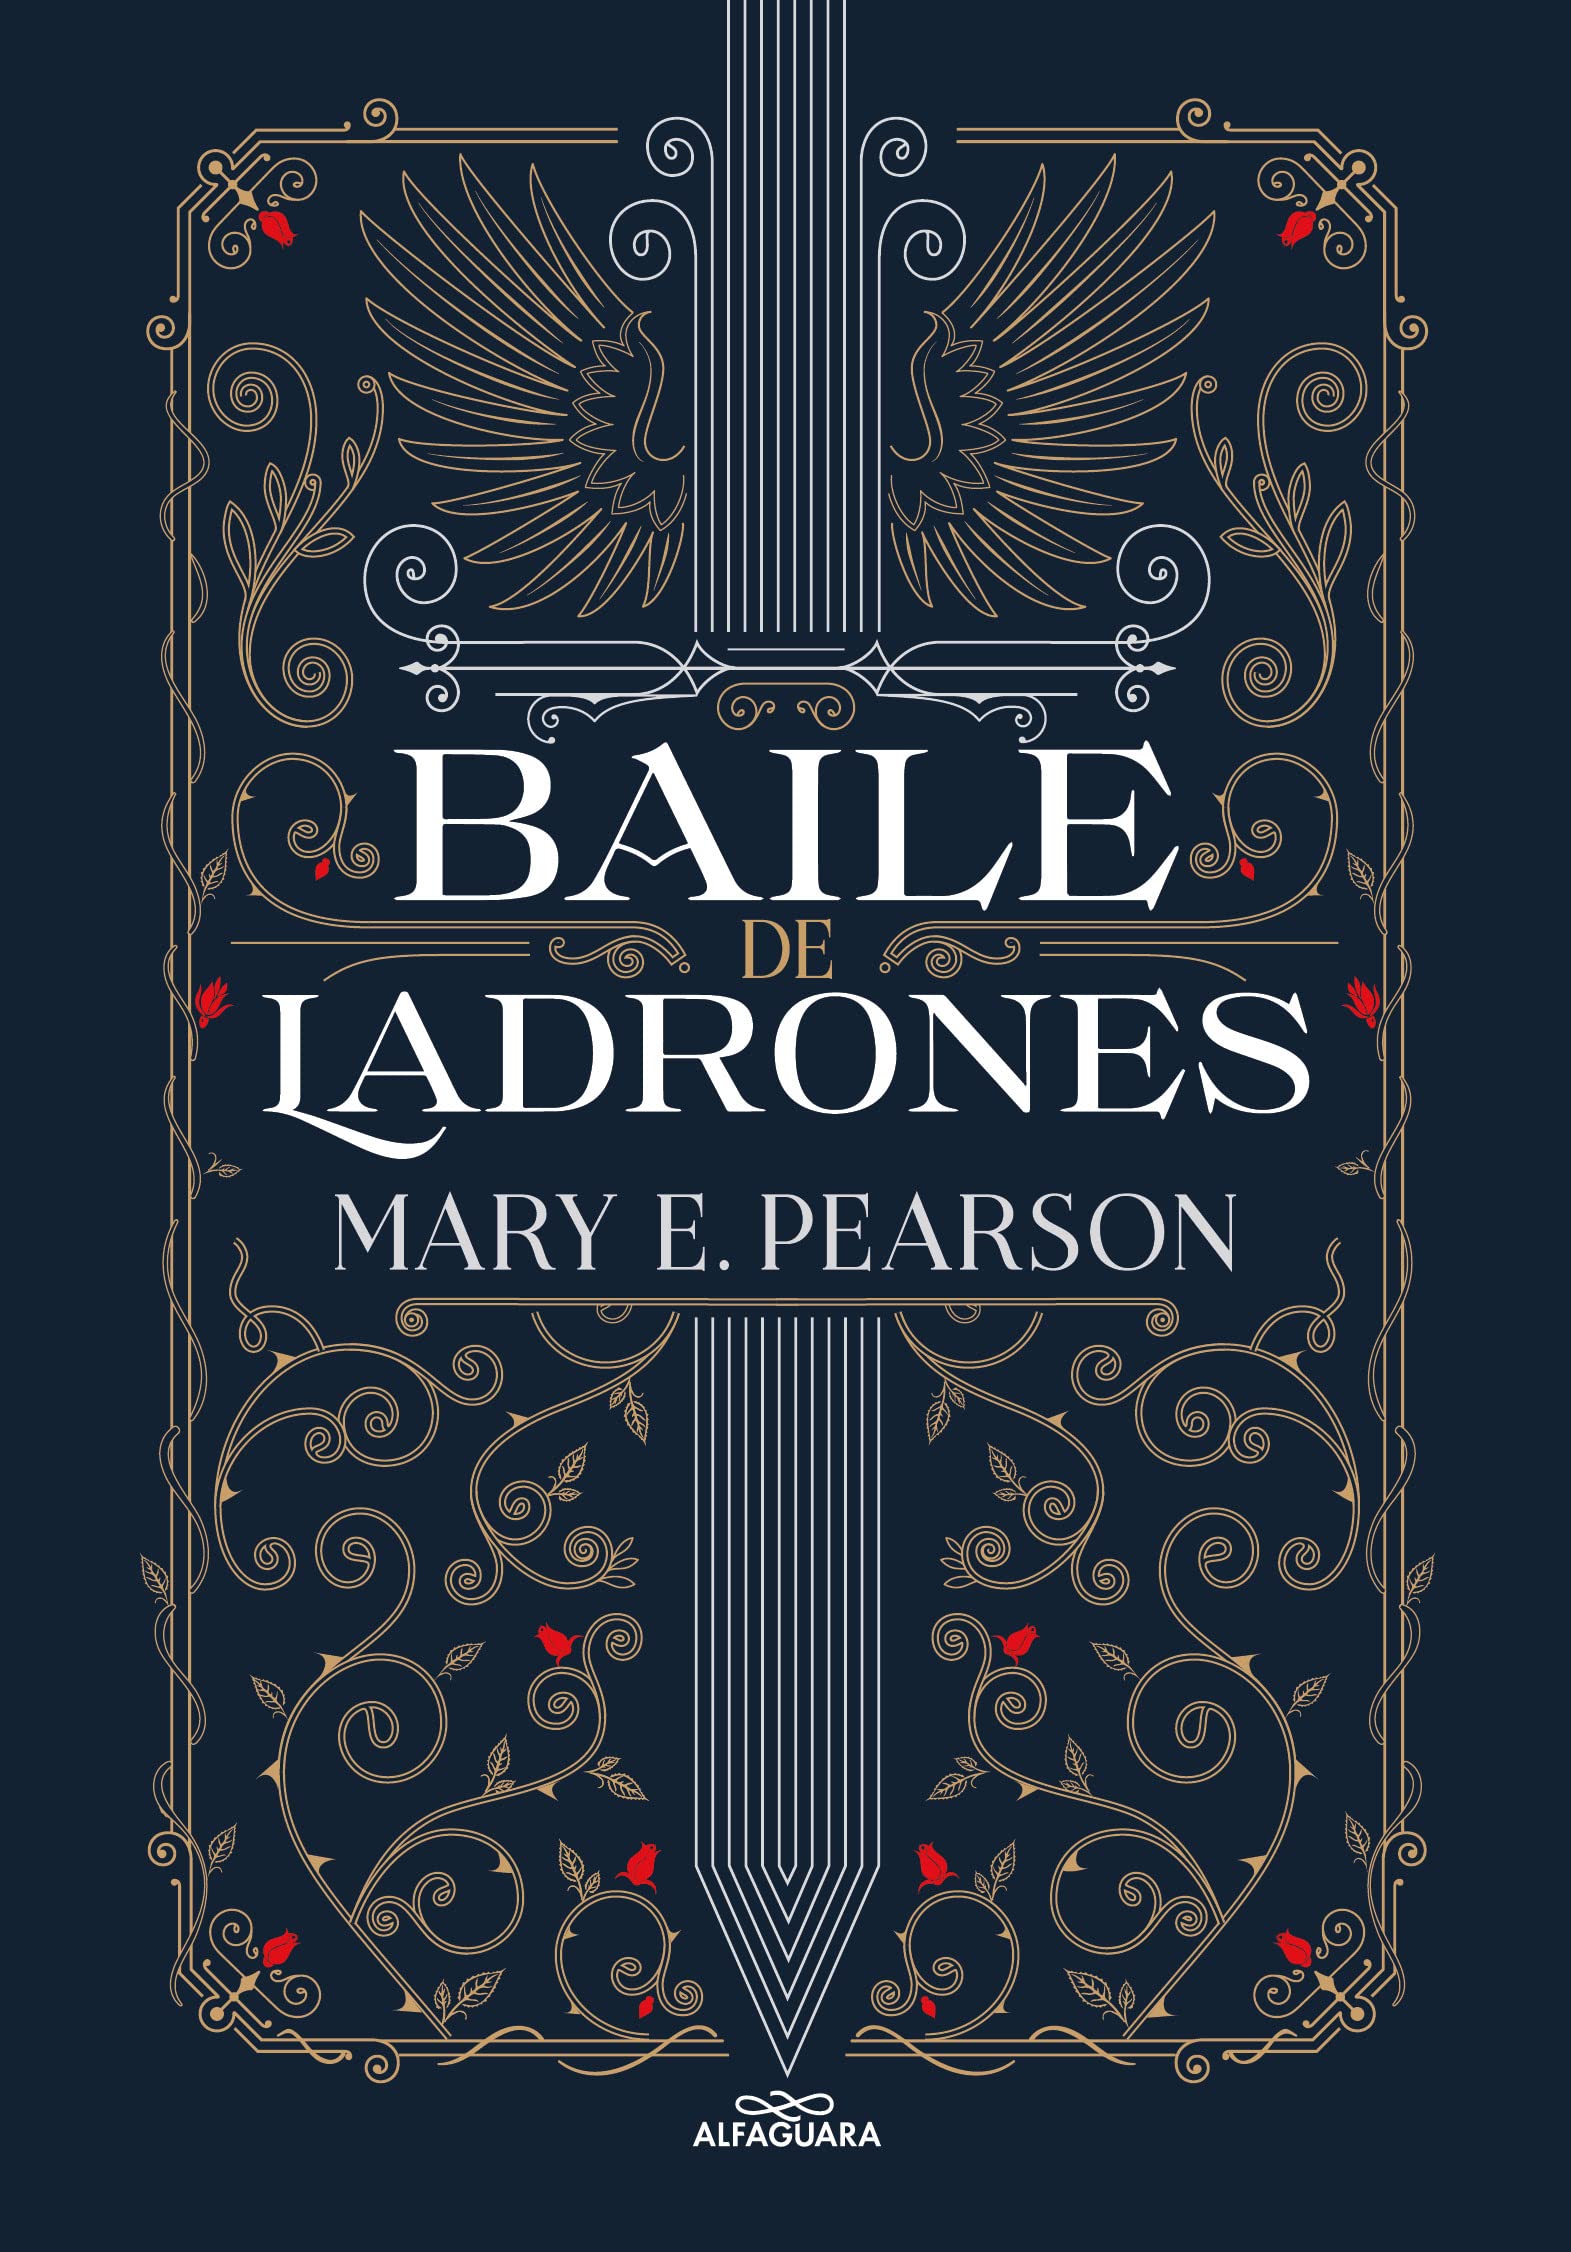 Libro: Baile de ladrones por Mary E. Pearson